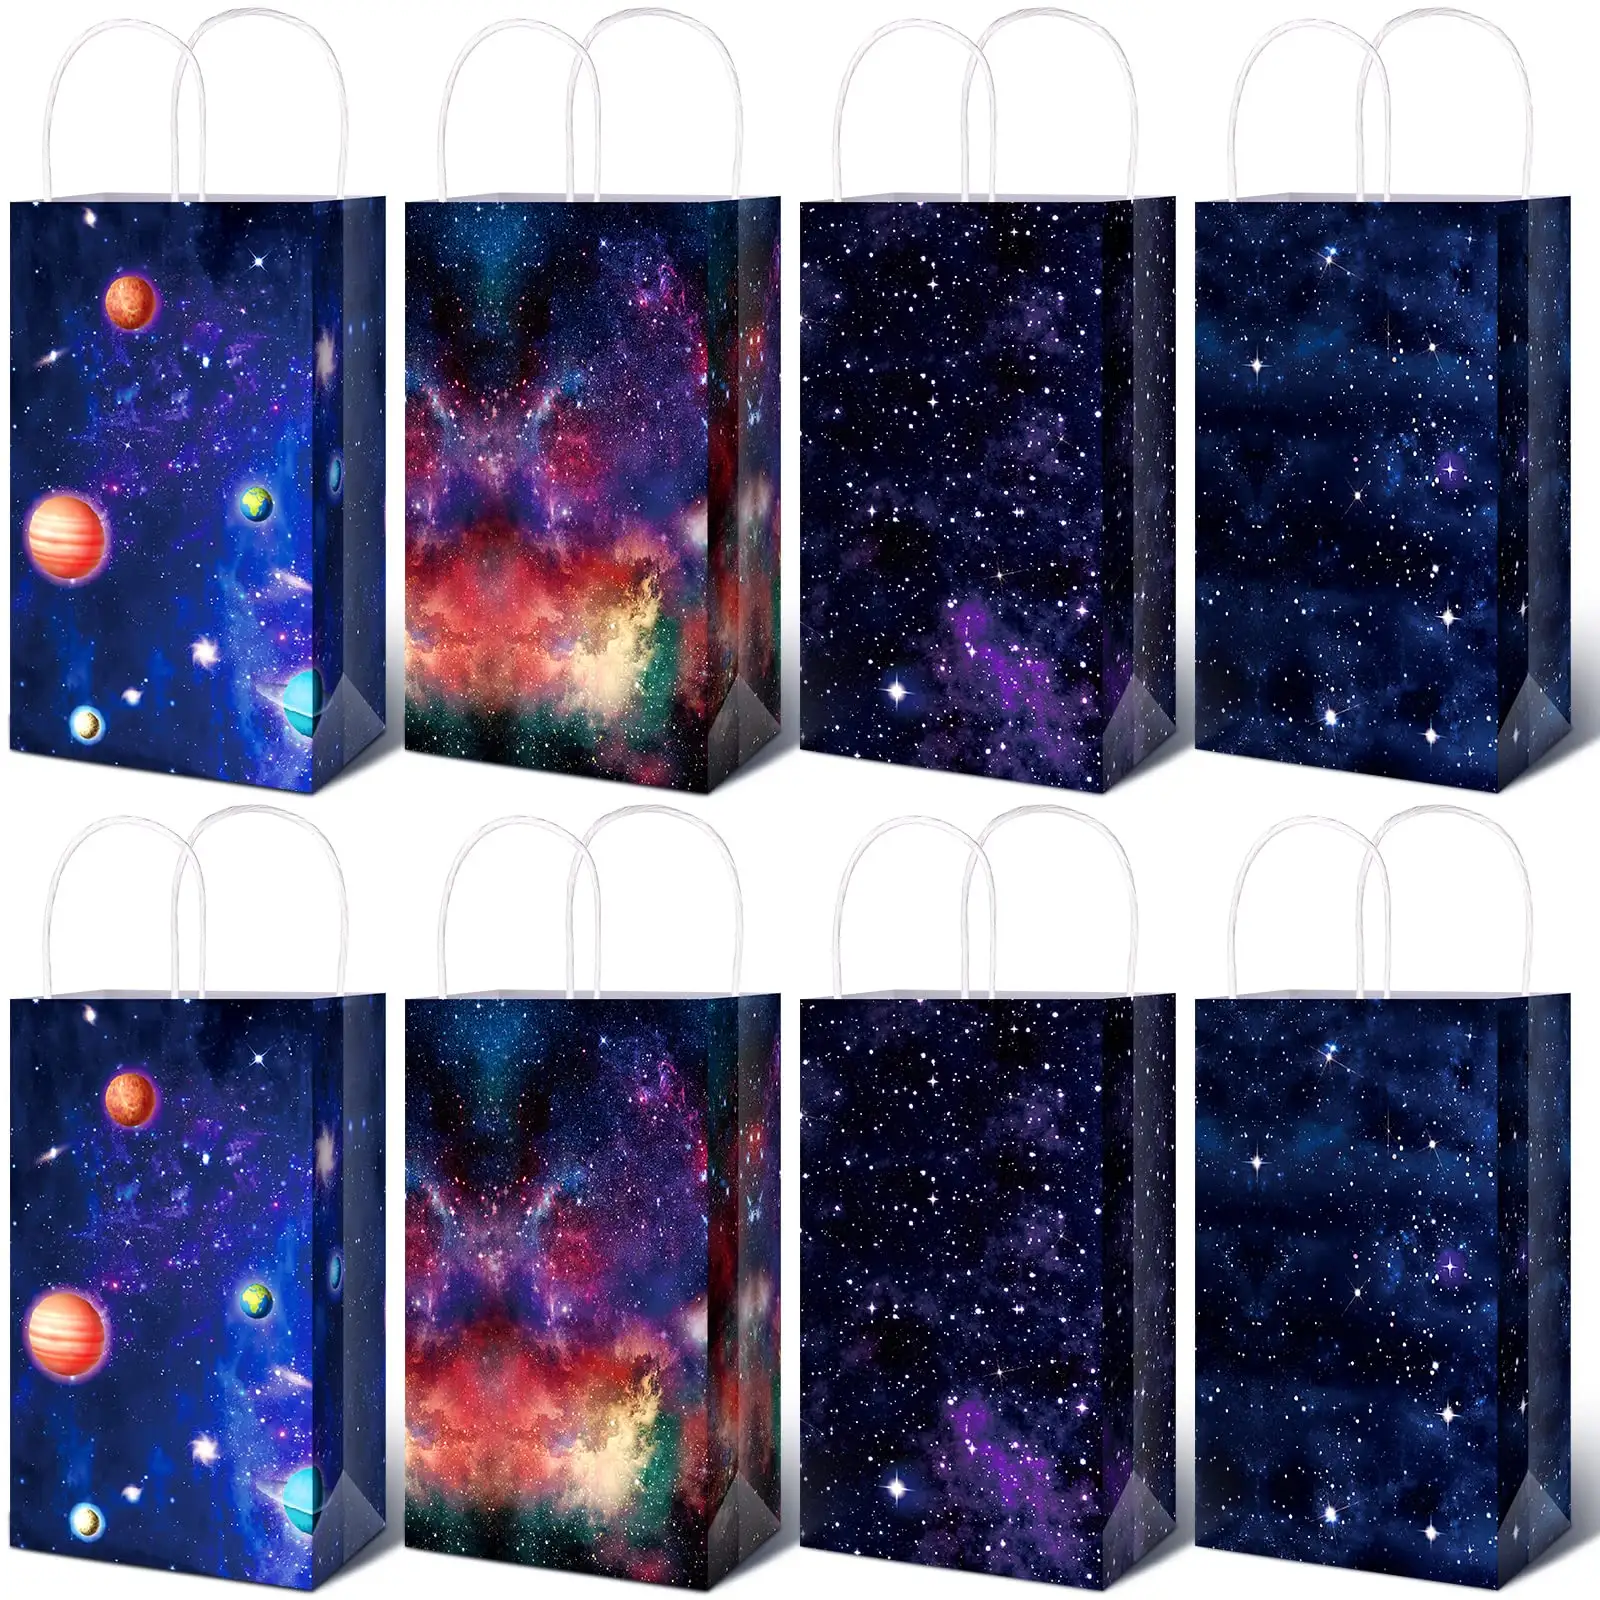 Luar Angkasa hadiah tas luar angkasa pesta nikmat Planet permen Galaxy tas hadiah untuk anak-anak laki-laki perempuan tema angkasa perlengkapan pesta